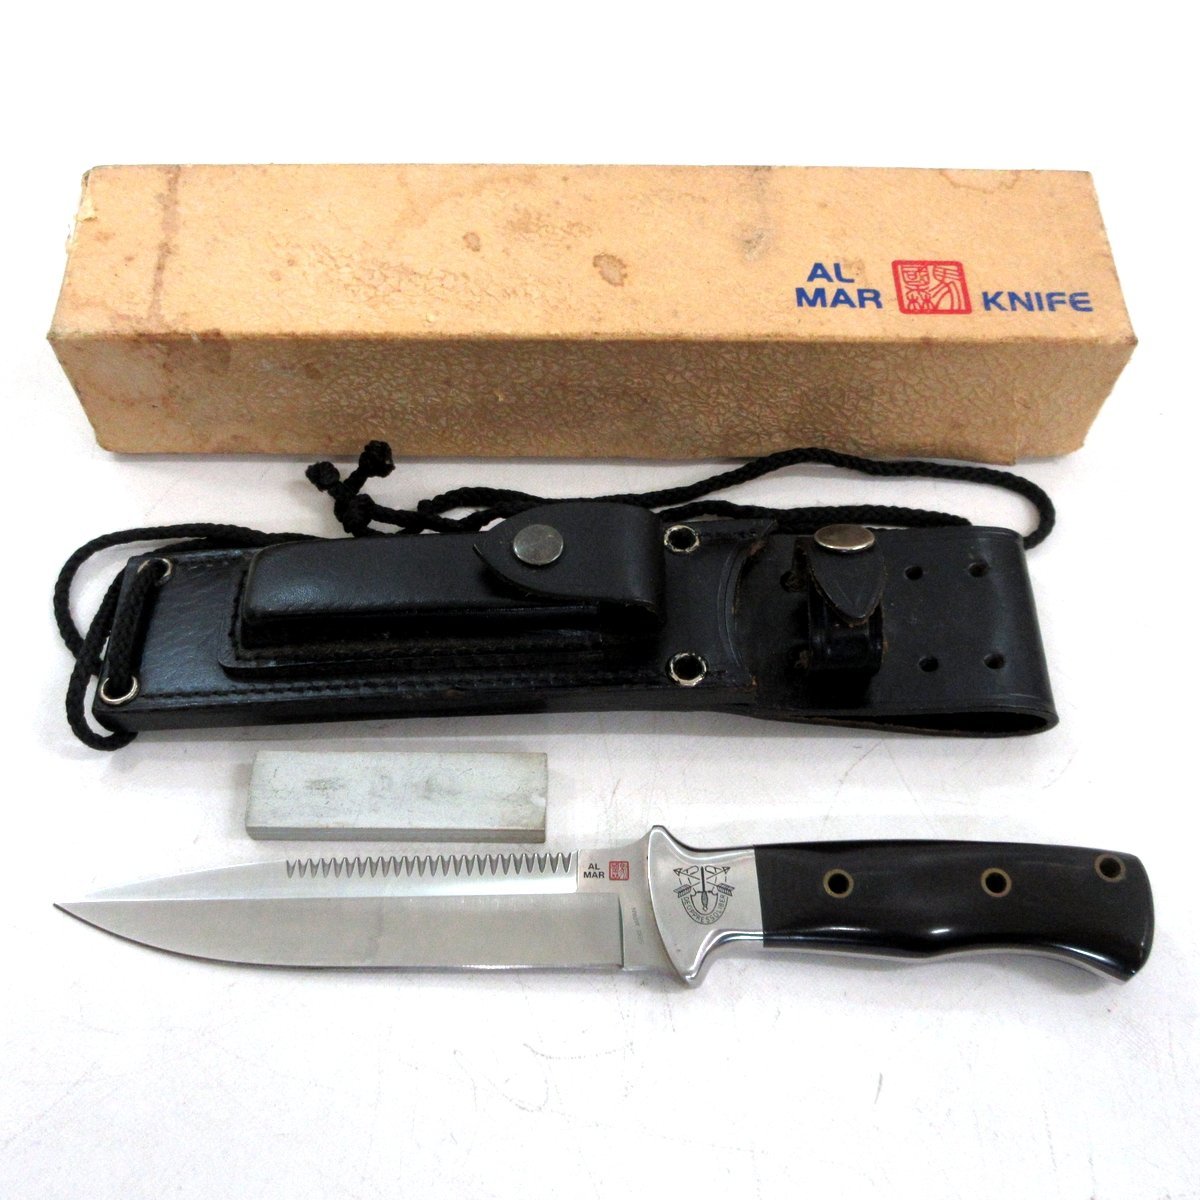 低価再入荷 almar knife ソフアタックs A47mB-m17751613515 celcas.cl